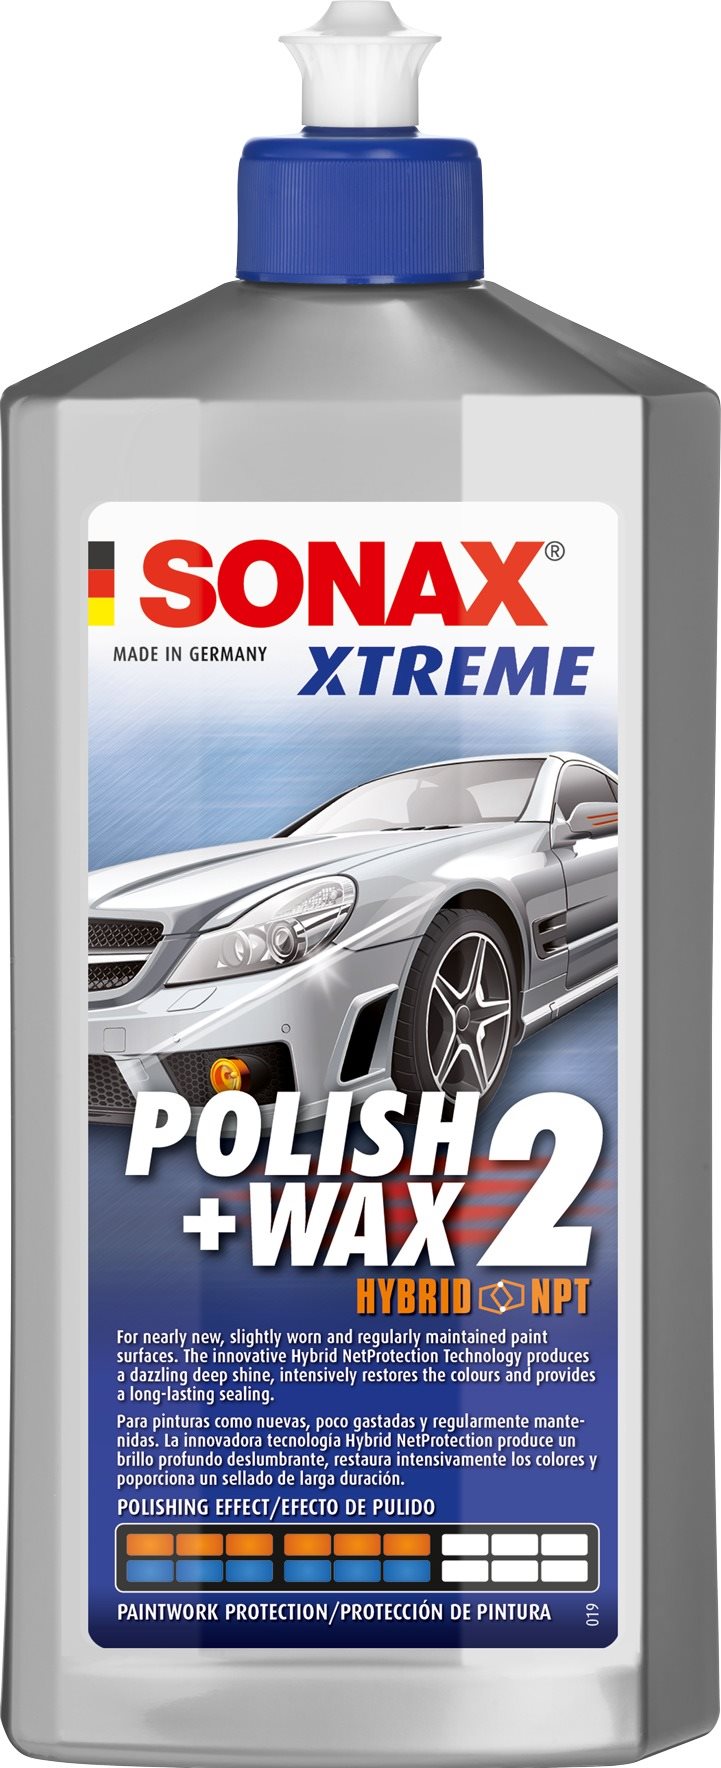 SONAX Xtreme Polish & Wax 2 NanoPro- sensitive, 500ml-es autó kozmetikai termék